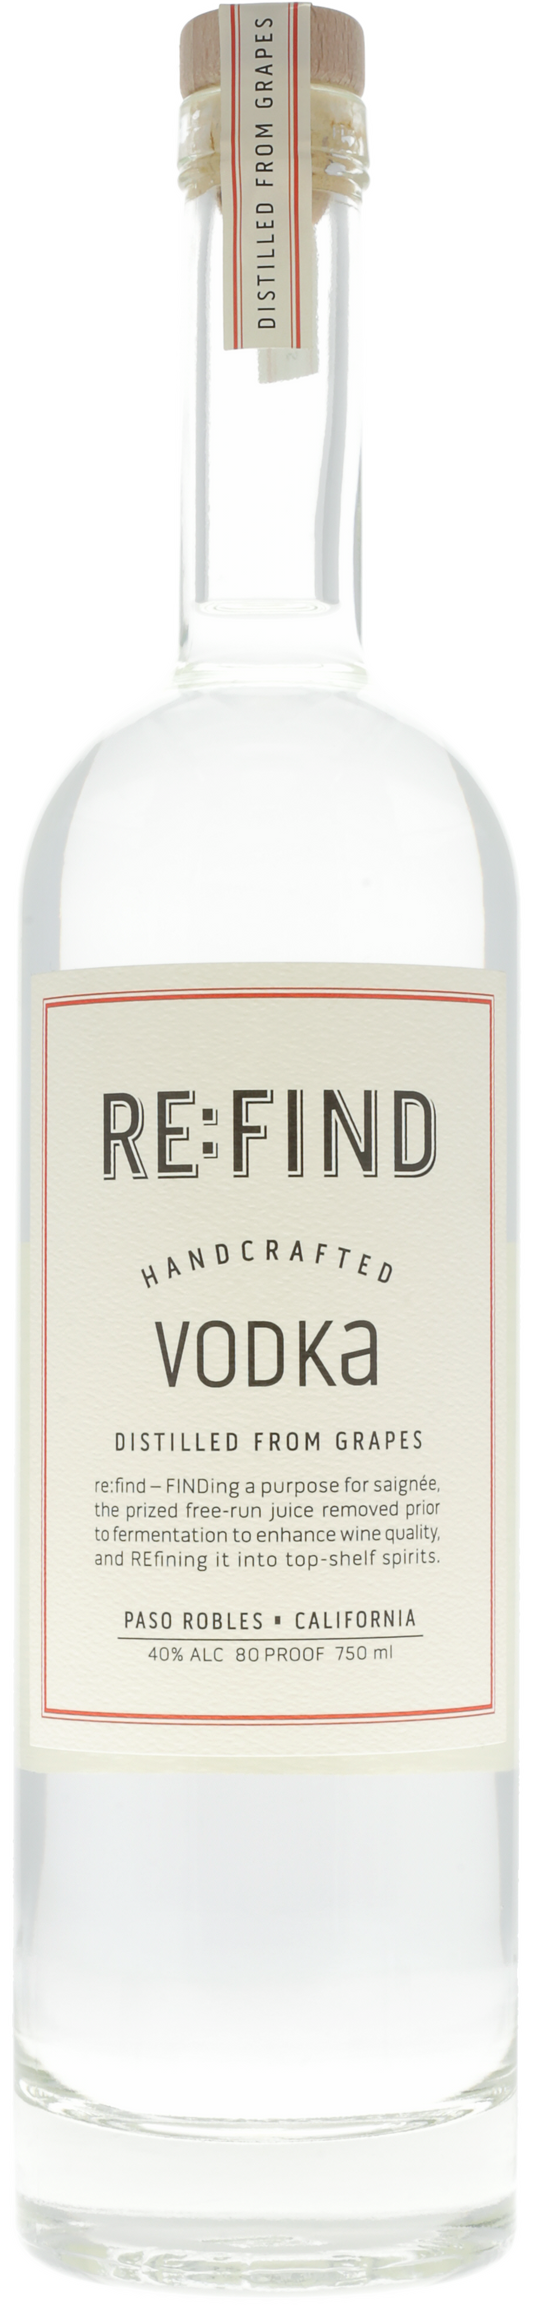 Re:Find Vodka